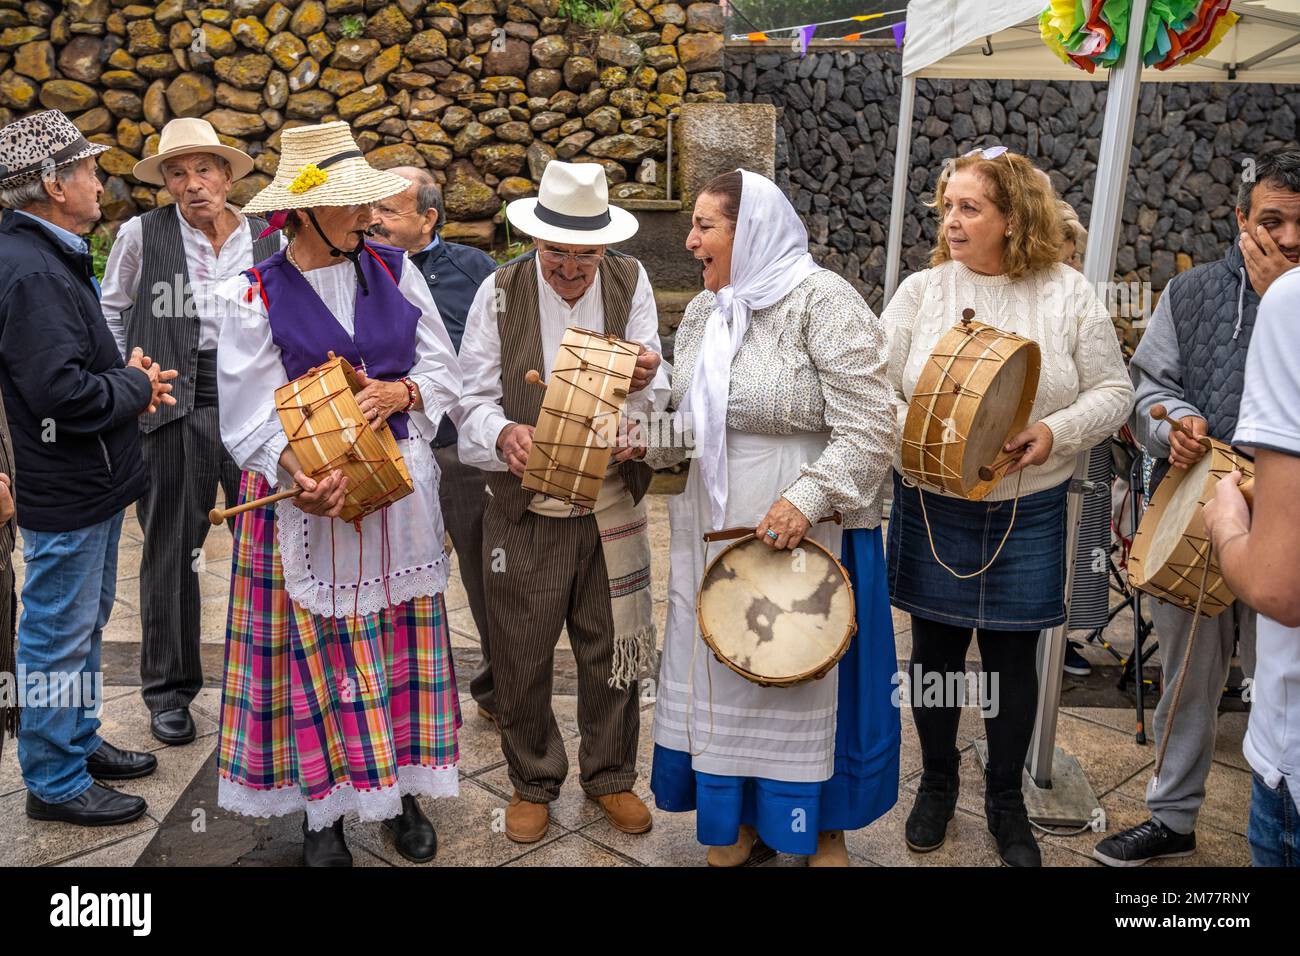 Traditionell gekleidete ältere Musiker während der Bajada in Arure, La Gomera, Kanarische Inseln, Spanien |  Traditional dressed elderly musicians dur Stock Photo